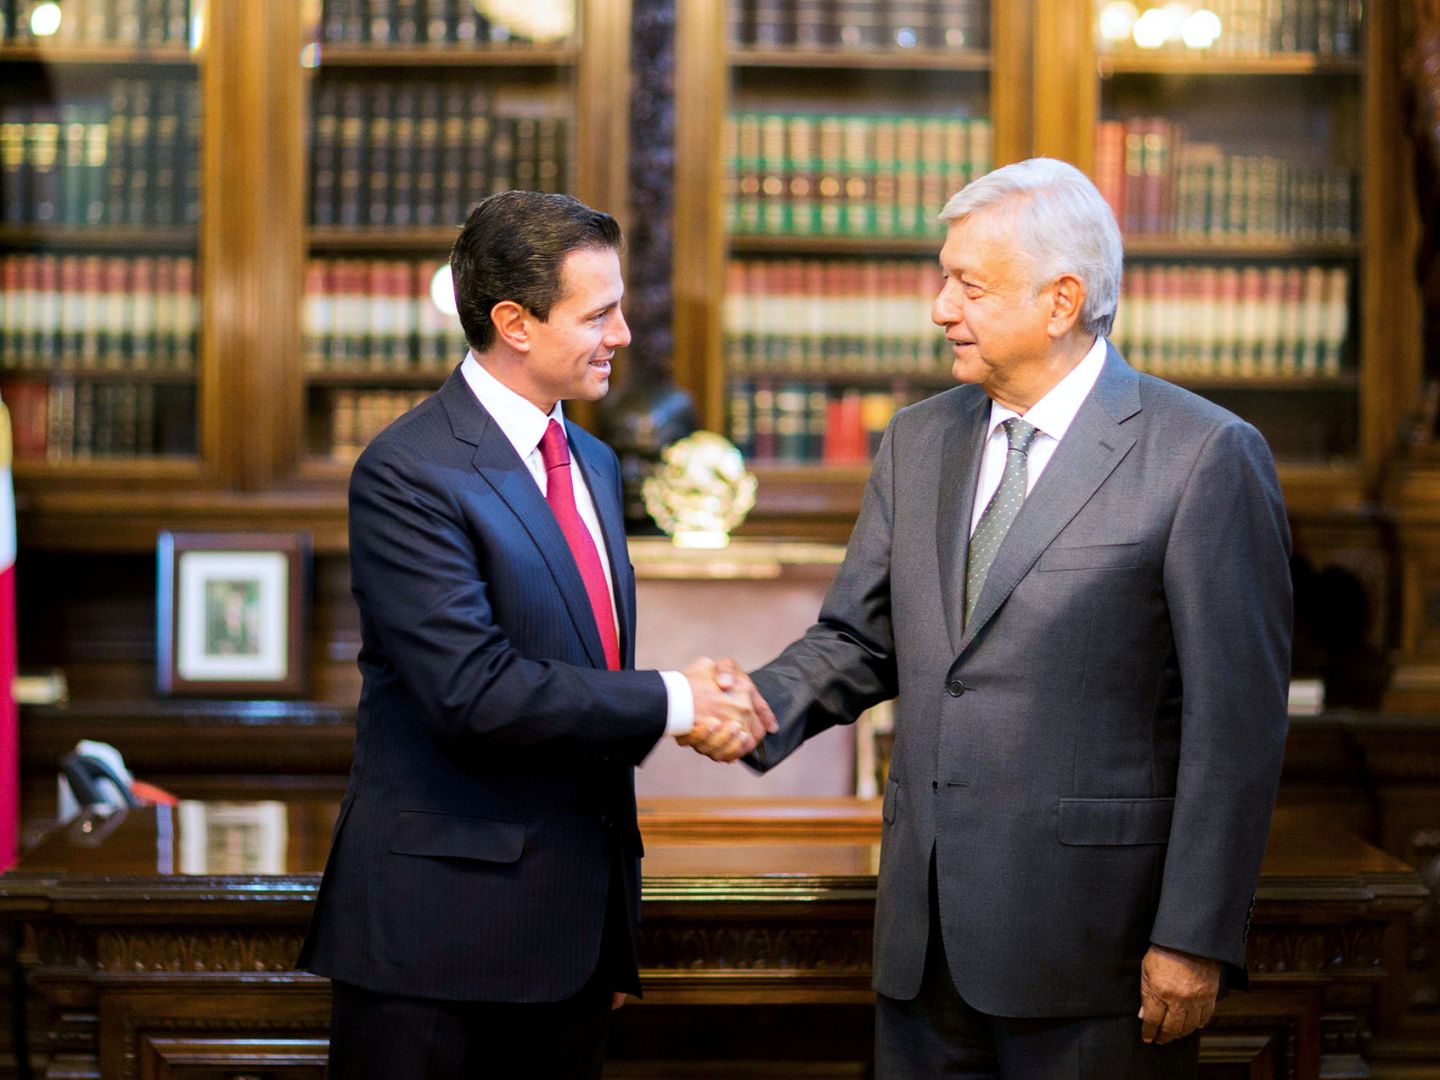 El presidente saliente Enrique Pena Nieto (izquierda) estrecha la mano a Andrés Manuel López Obrador (derecha) en el Palacio Nacional en Ciudad de México, el 3 de julio de 2018. (Reuters)